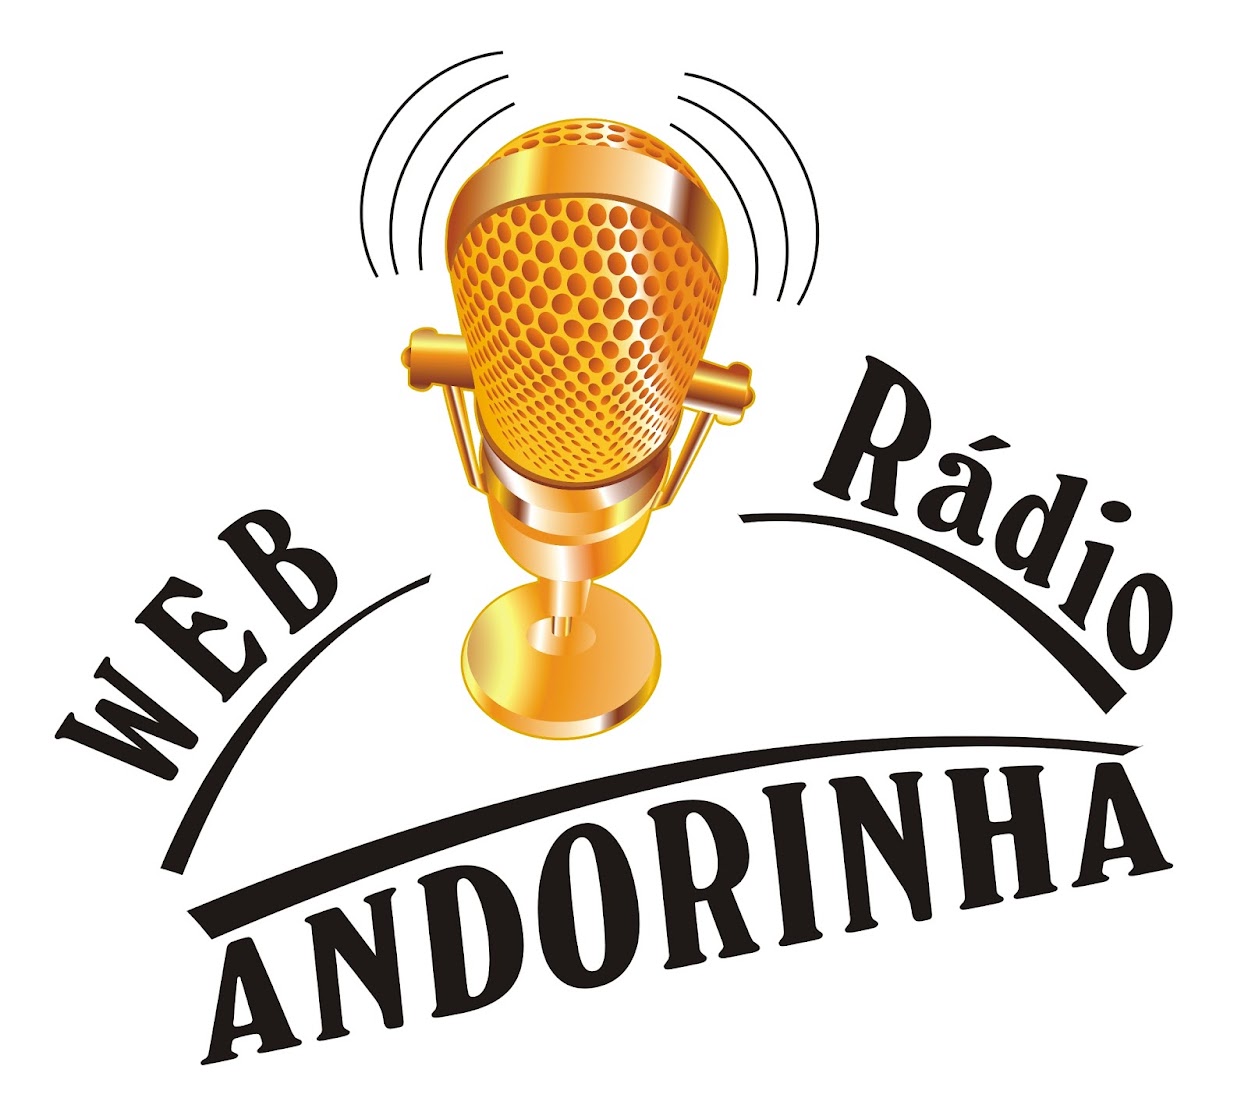 Radio Andorinha...